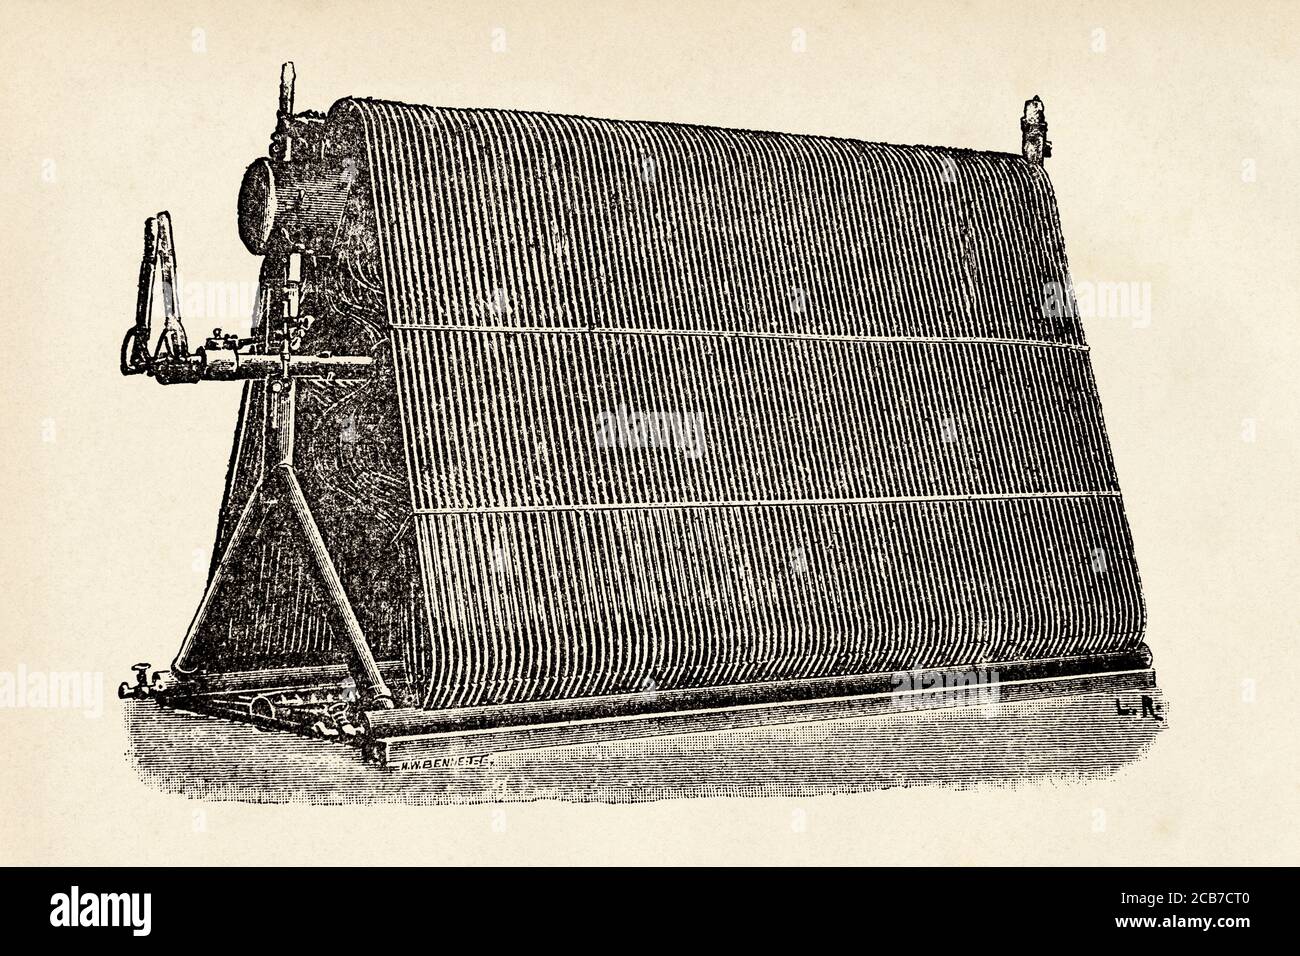 La chaudière à tube d'eau de Hiram Maxim de sa machine volante. Hiram Maxim (1840-1916) inventeur britannique. Angleterre. Illustration gravée de la Ilustracion Española y Americana datant du XIXe siècle 1894 Banque D'Images